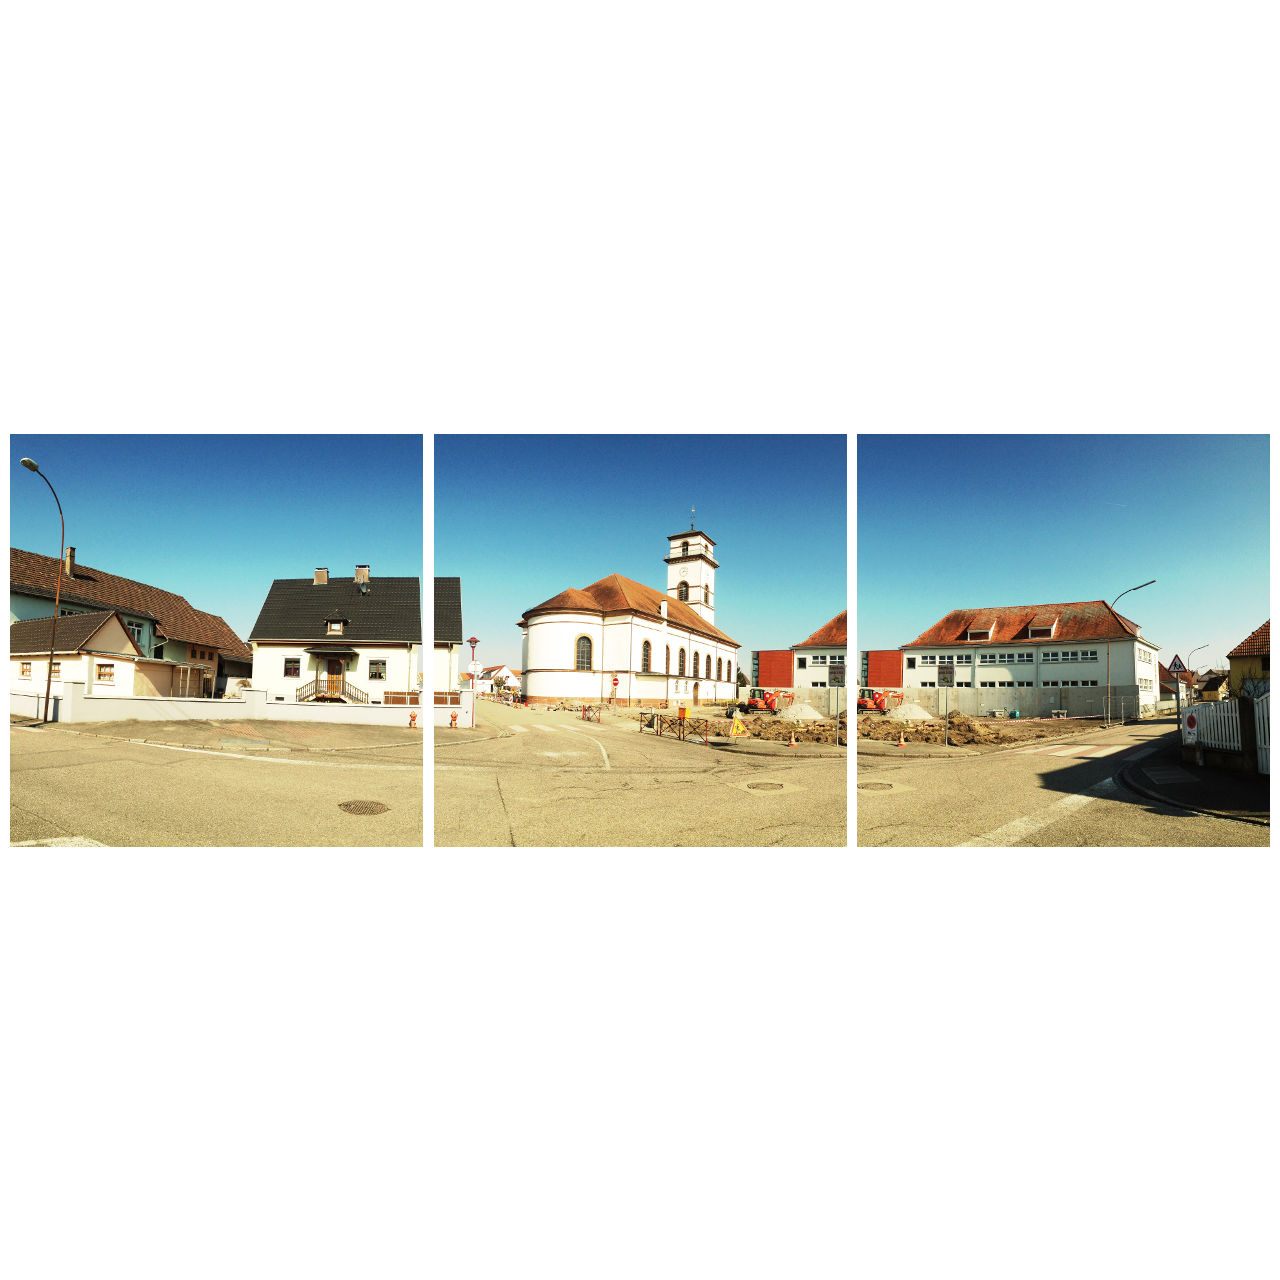 Zentrales Motiv als teil einer Dorfplatzszene in Drusenheim, Frankreich. Hinter einer Baustelle erhebt sich eine weiße Kirche mit rotem Dach. Die beiden Bilder rechts und links zeigen Wohngebäude mit Sattel- und Krüppelwalmdächern.